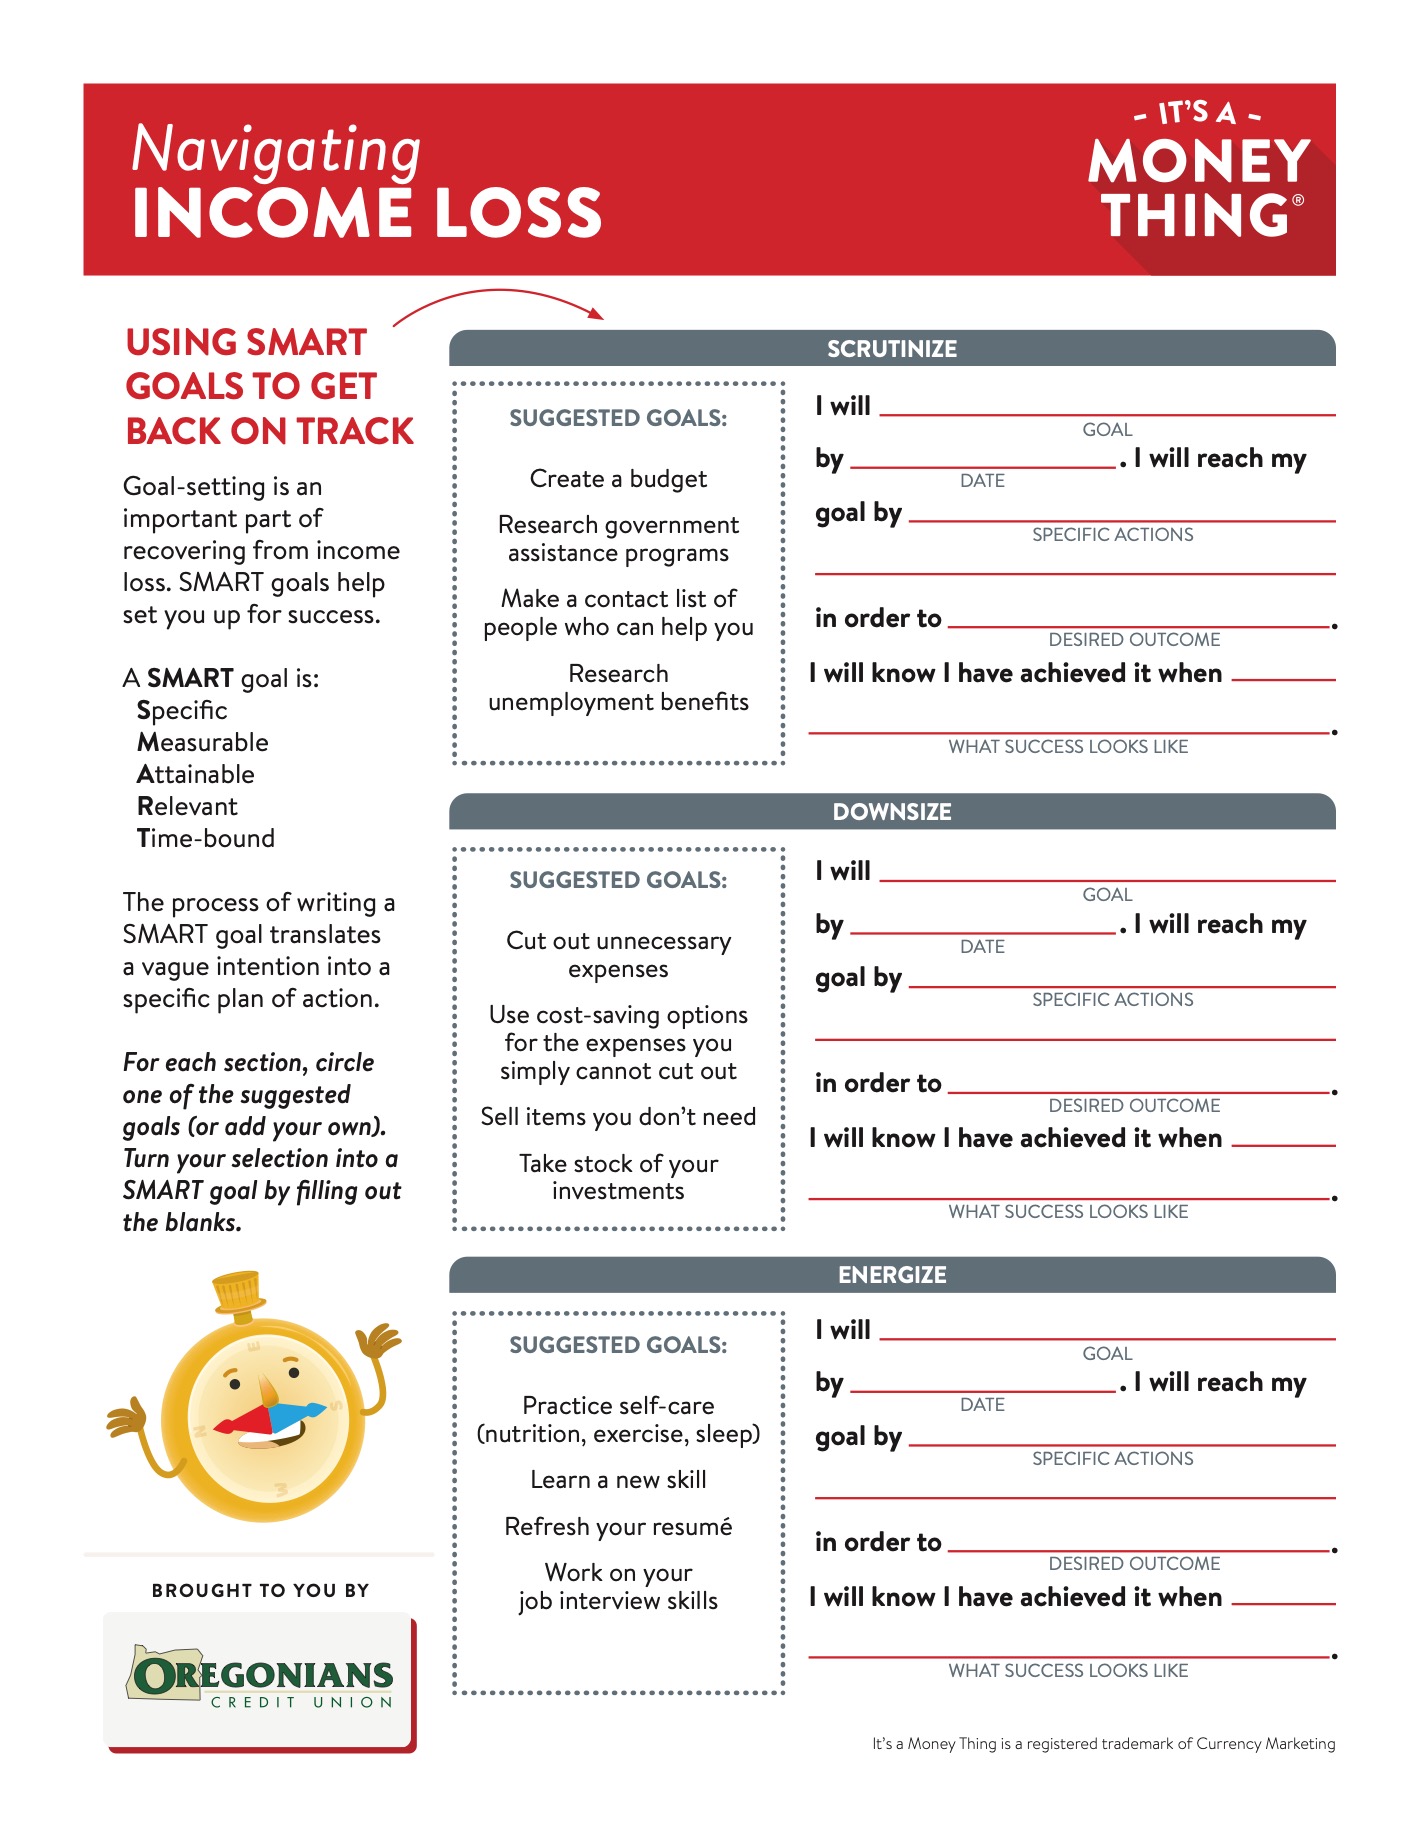 Navigating Income Loss - Handout image